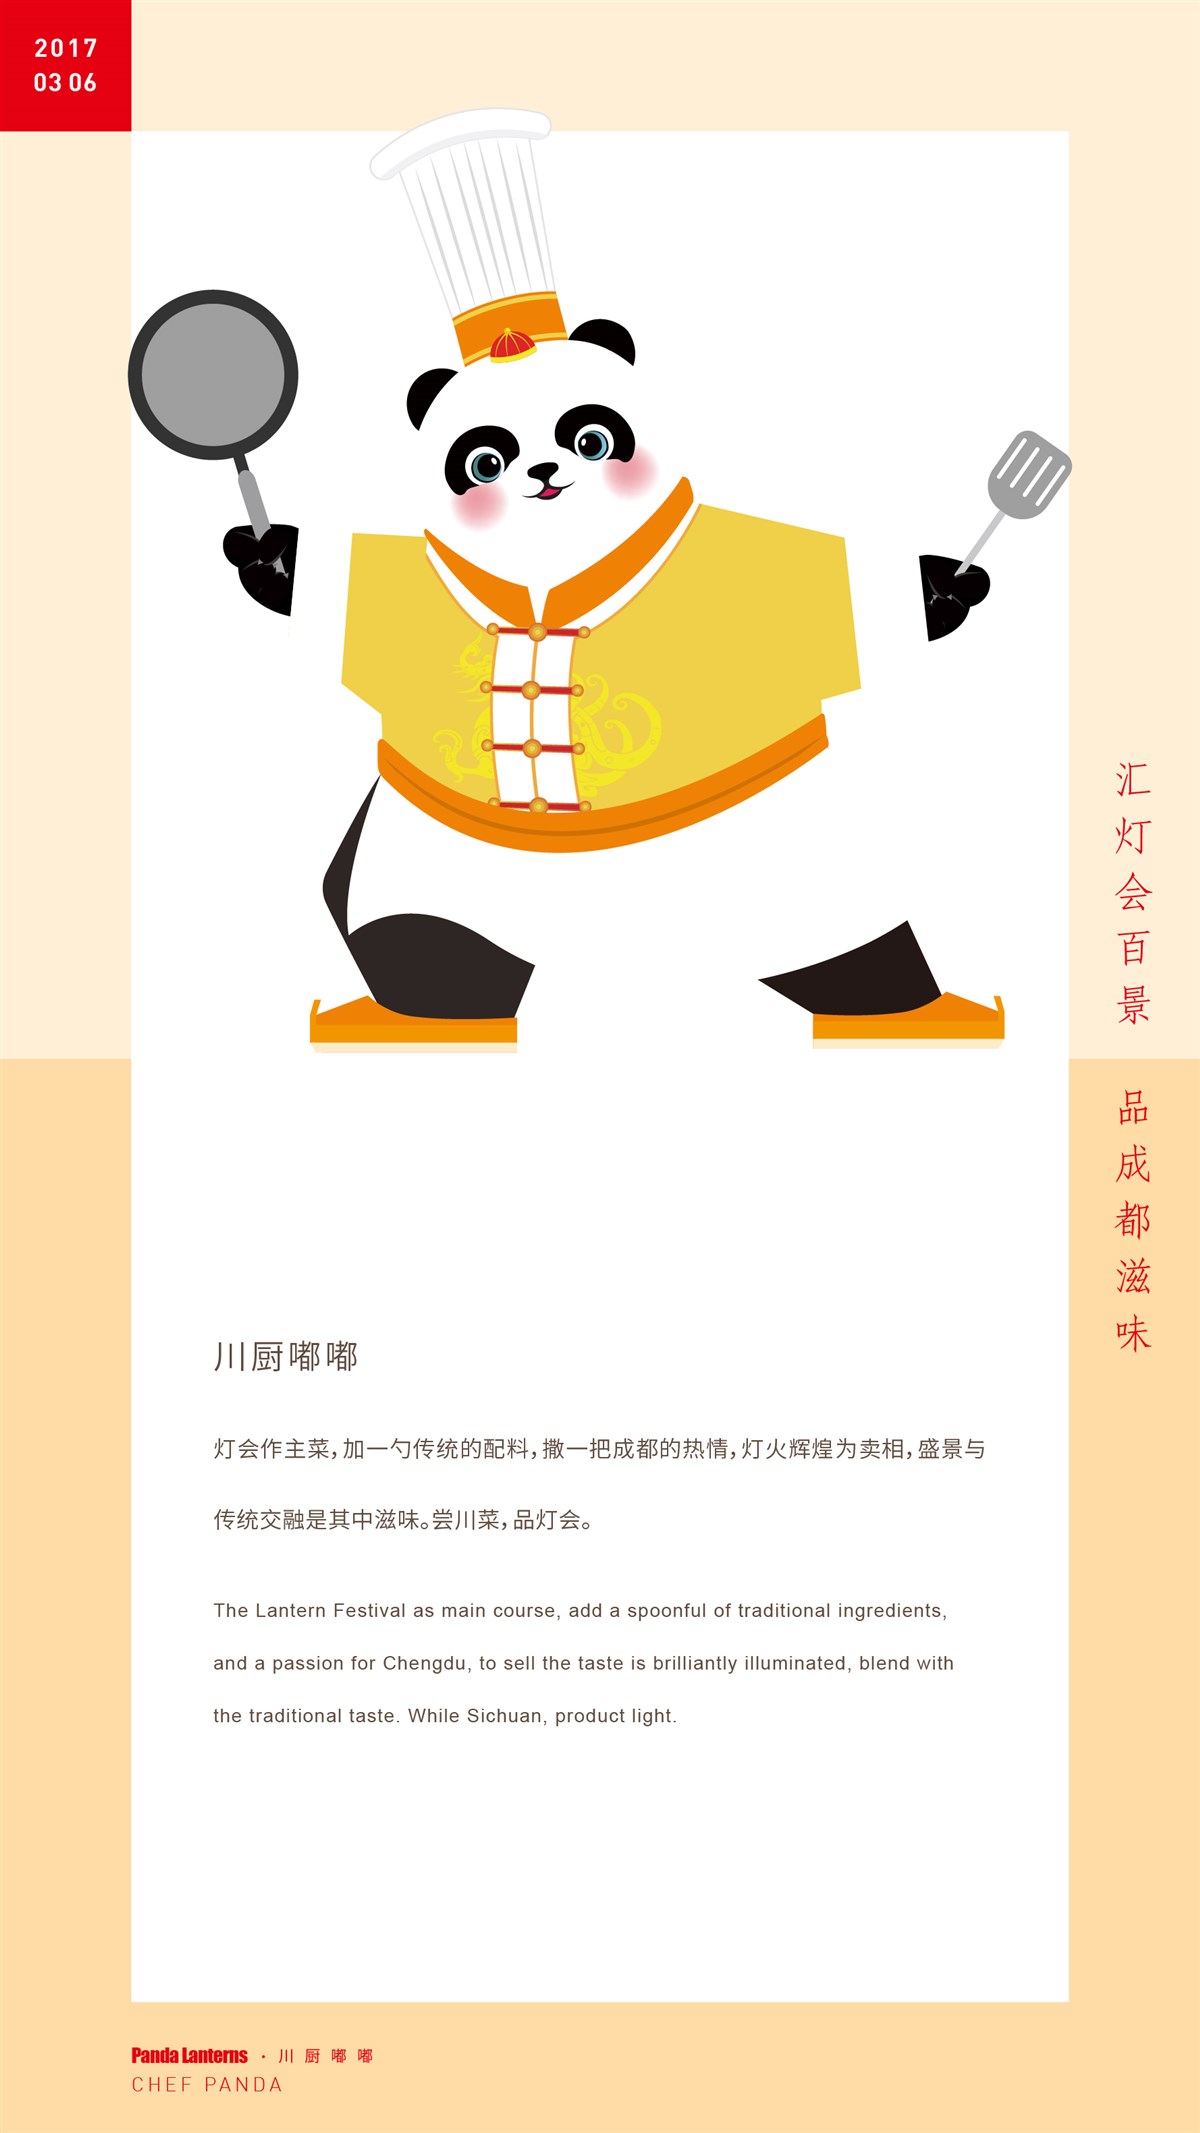 成都国际熊猫灯会/熊猫角色展示--時与間設計